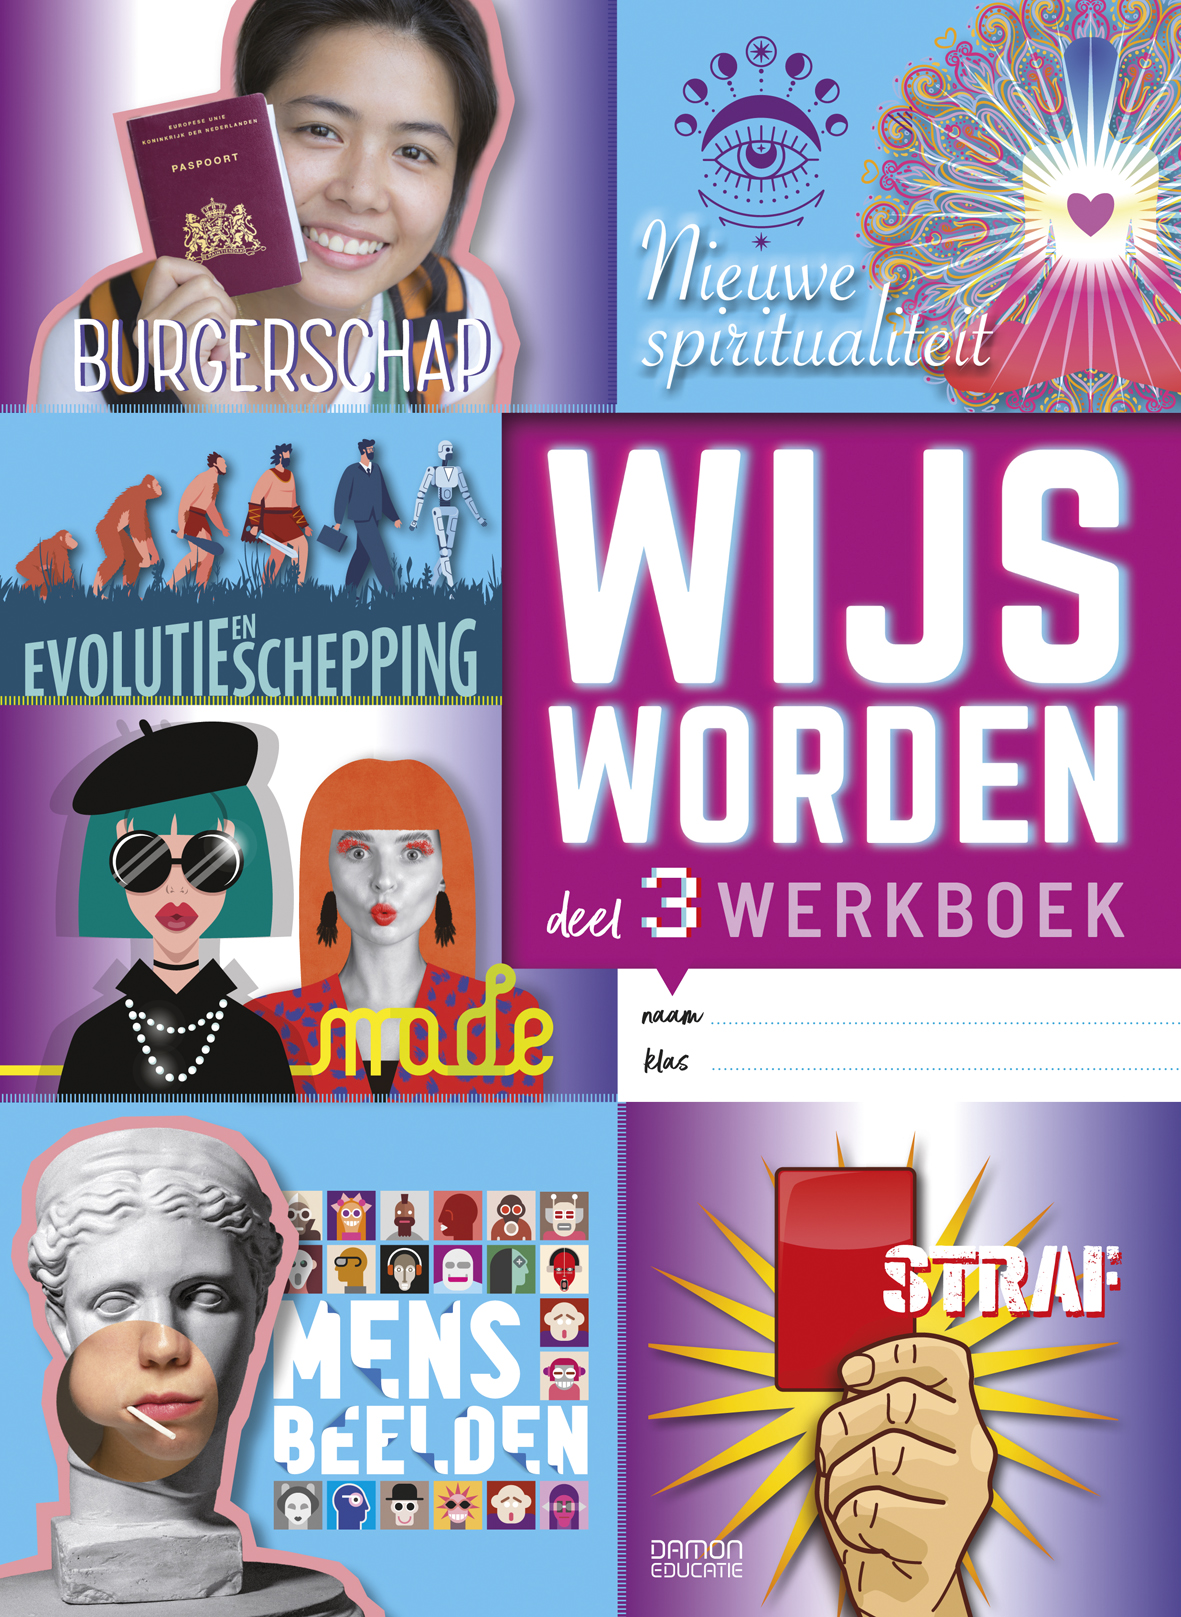 Wijs Worden VWO deel 3, werkboek